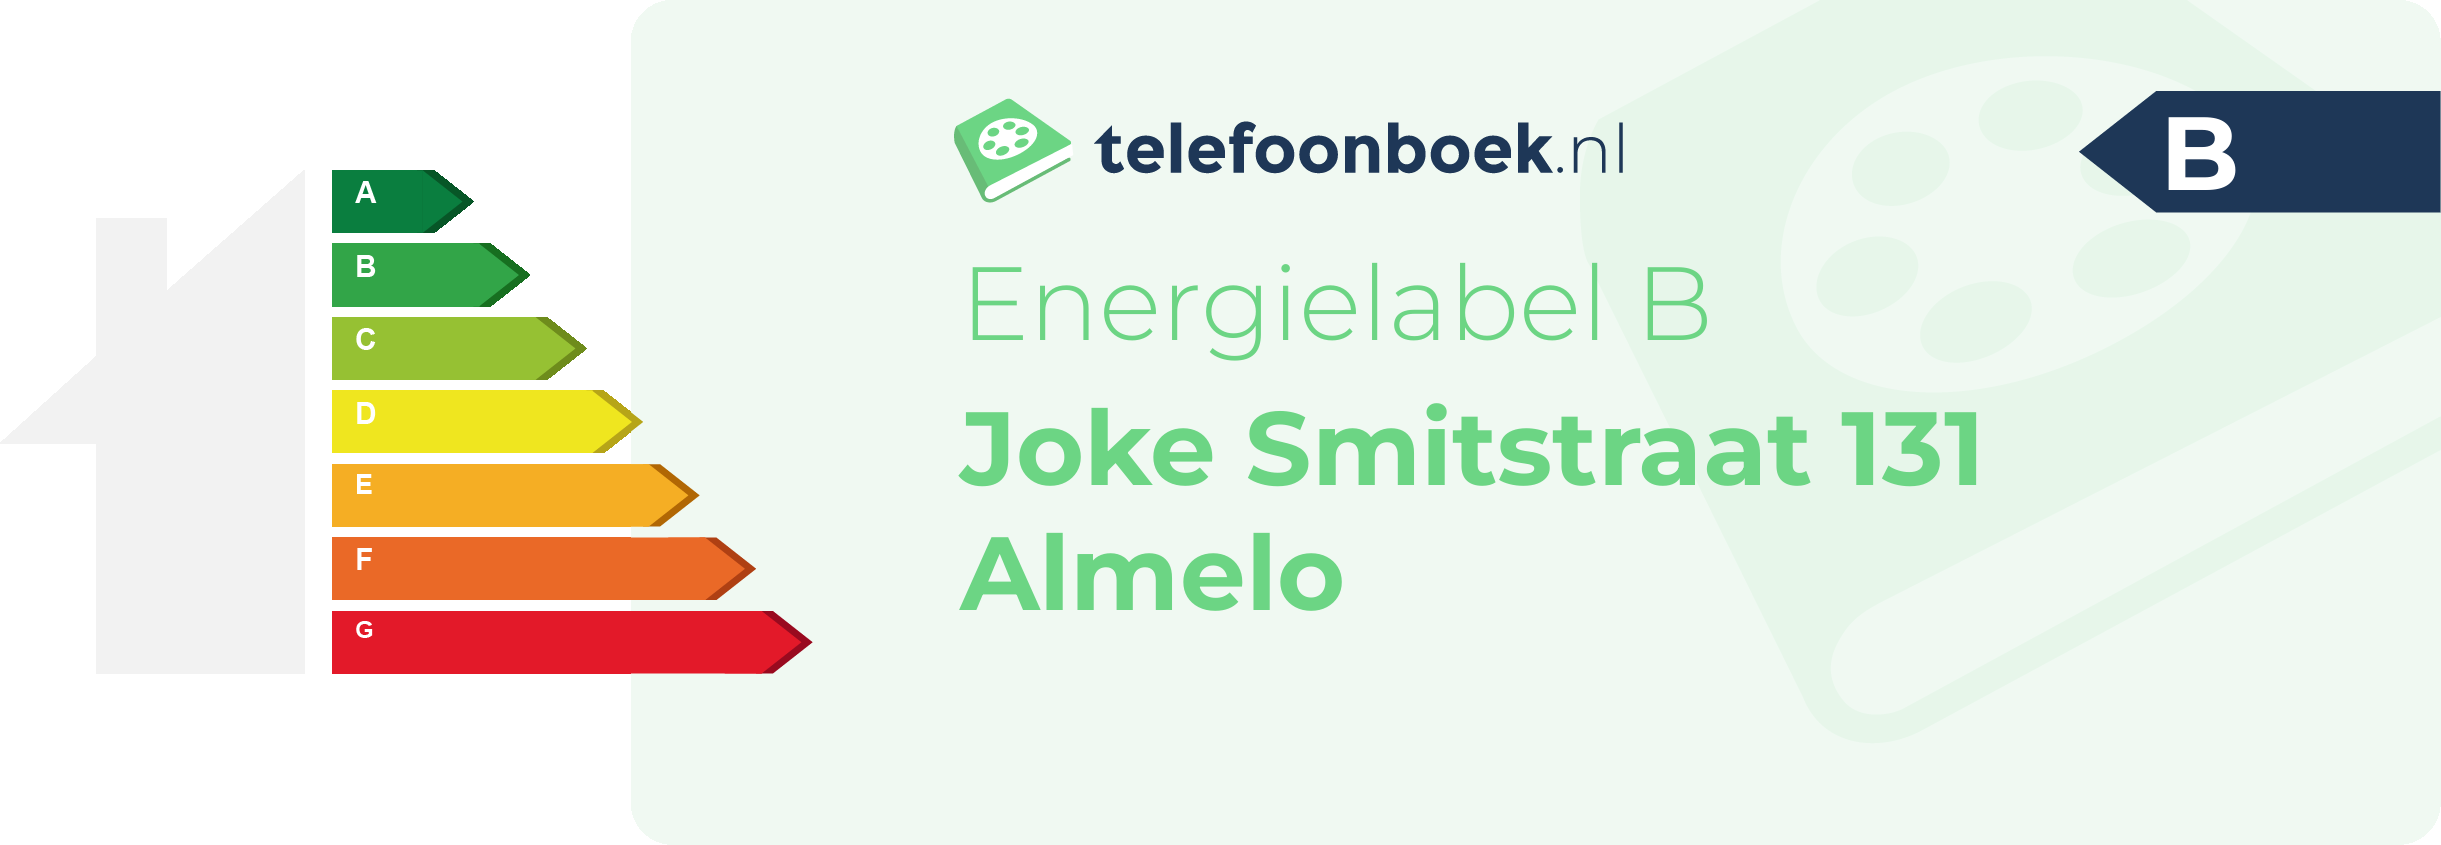 Energielabel Joke Smitstraat 131 Almelo